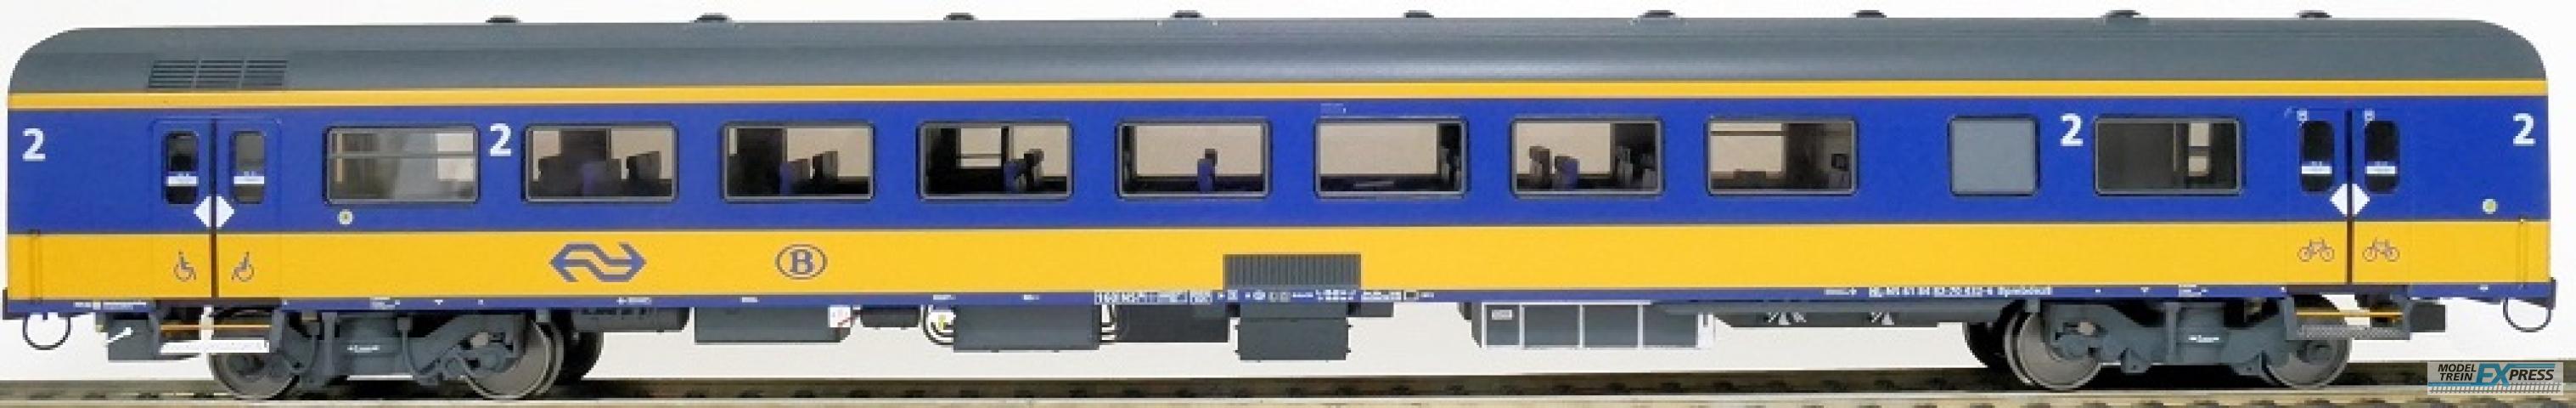 Exact-train 11023 NS ICRm Garnitur 1 (Amsterdam - Brussel) für die Hsl-Strecke eingesetzt Endwagen Bpmbdez8 ( Neue Farbe Gelb / Blau), Ep. VI